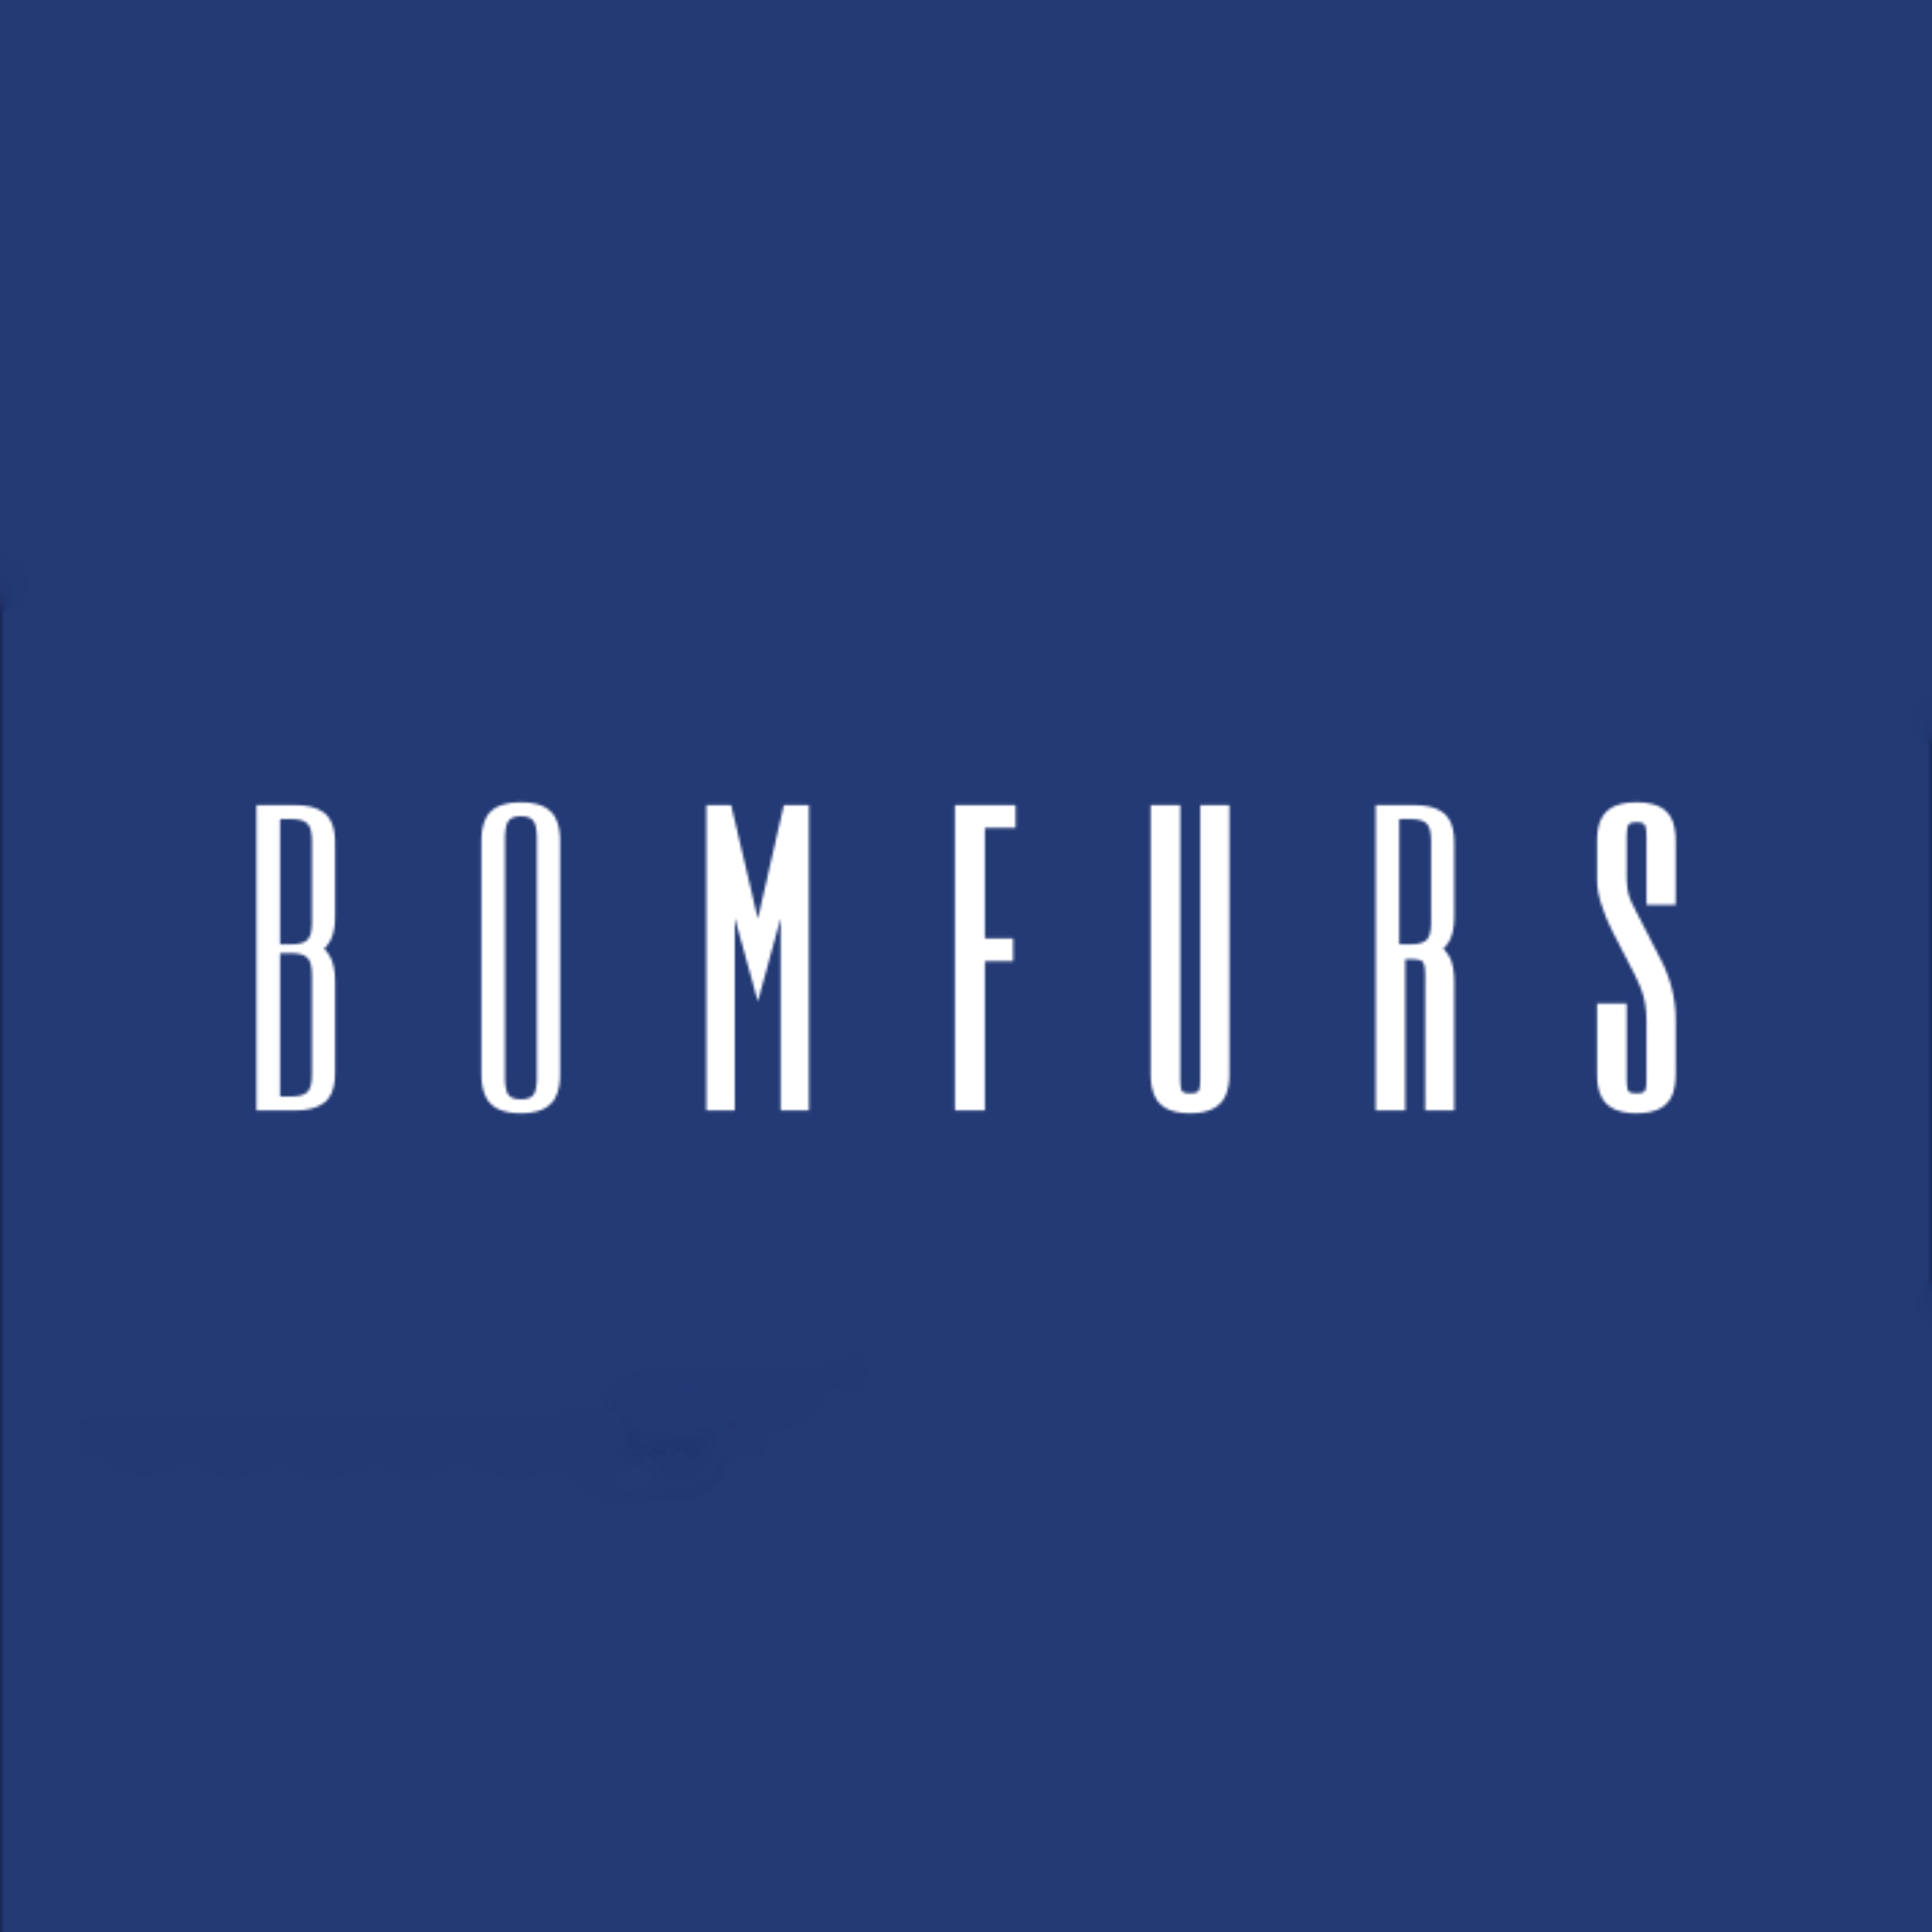 BOMFURS 